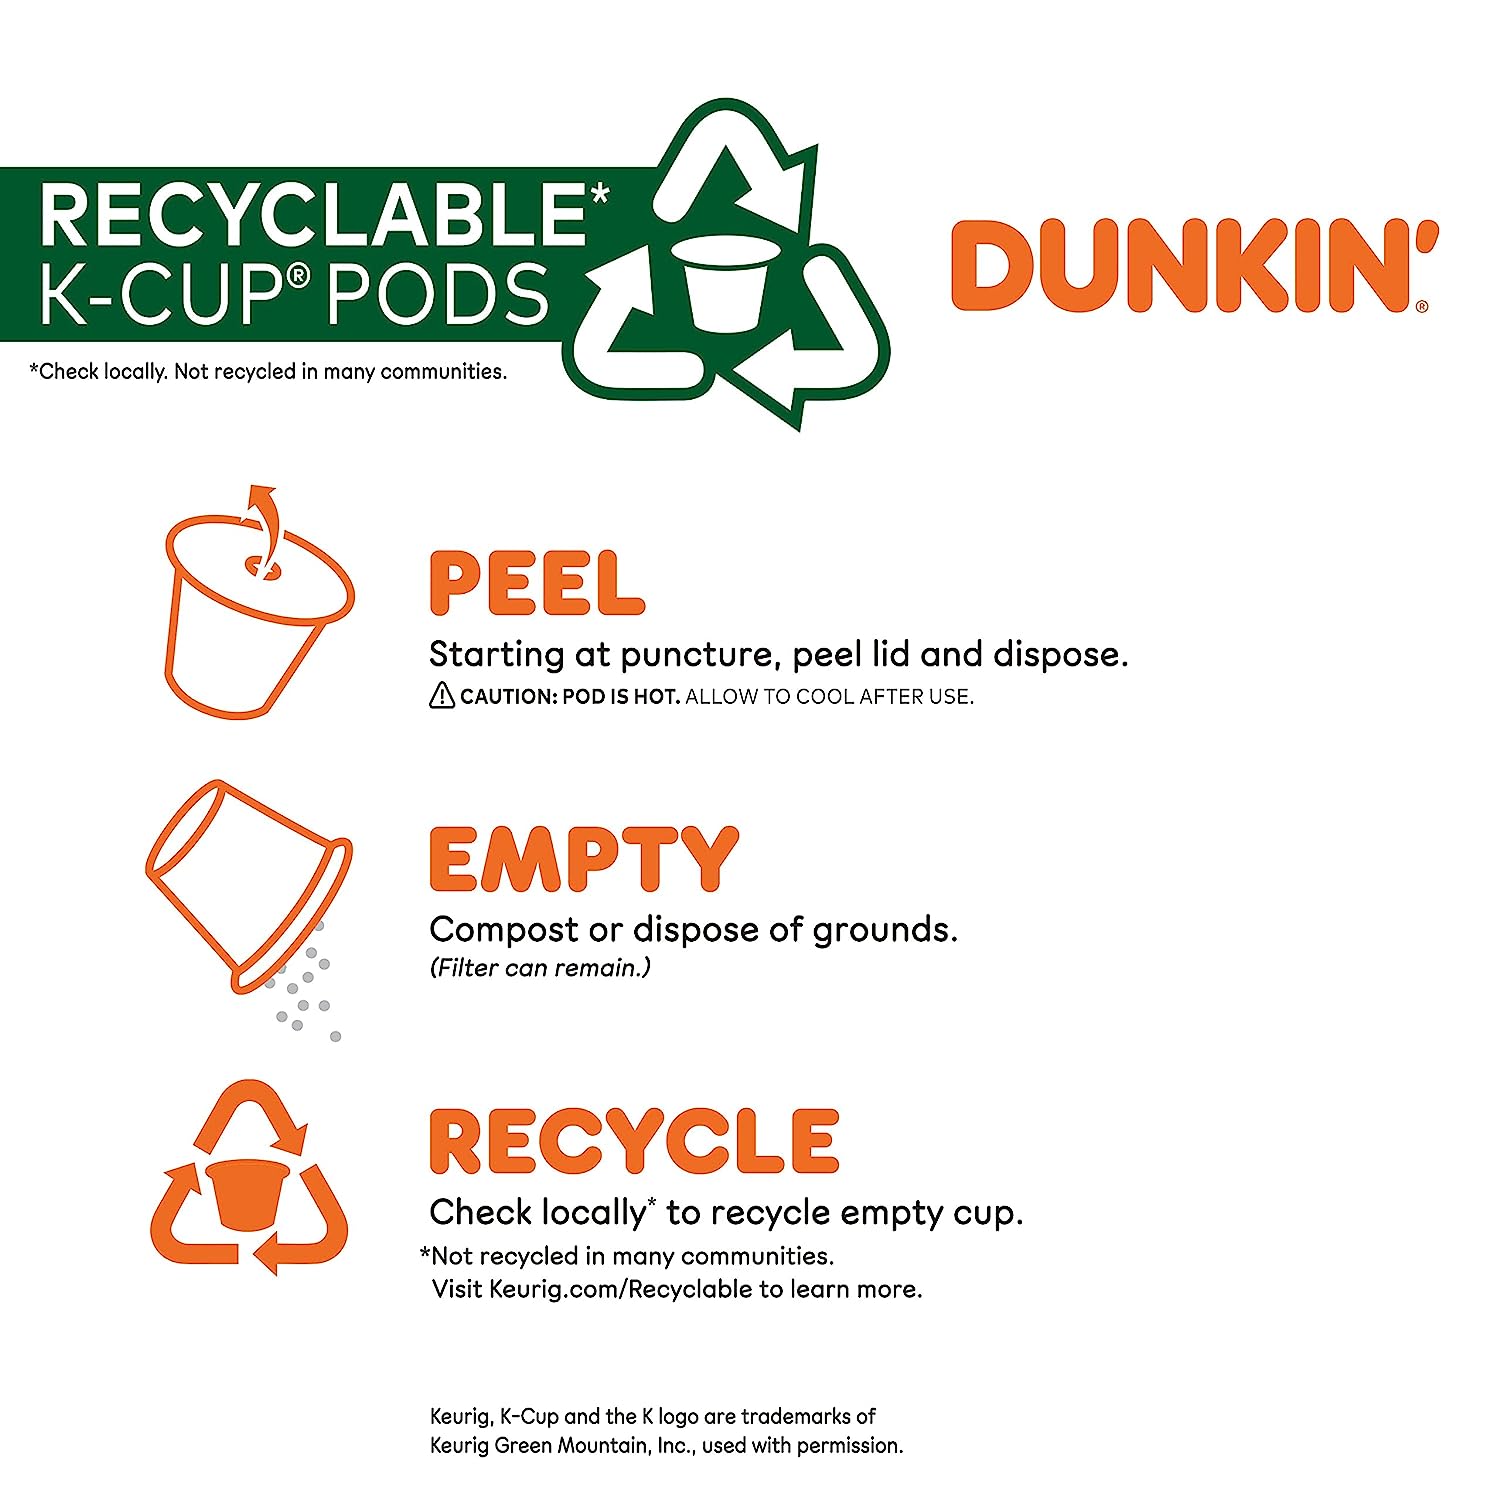 Dunkin' Original Blend Medium Roast Coffee, 88 Keurig K-Cup Pods : Grocery & Gourmet Food